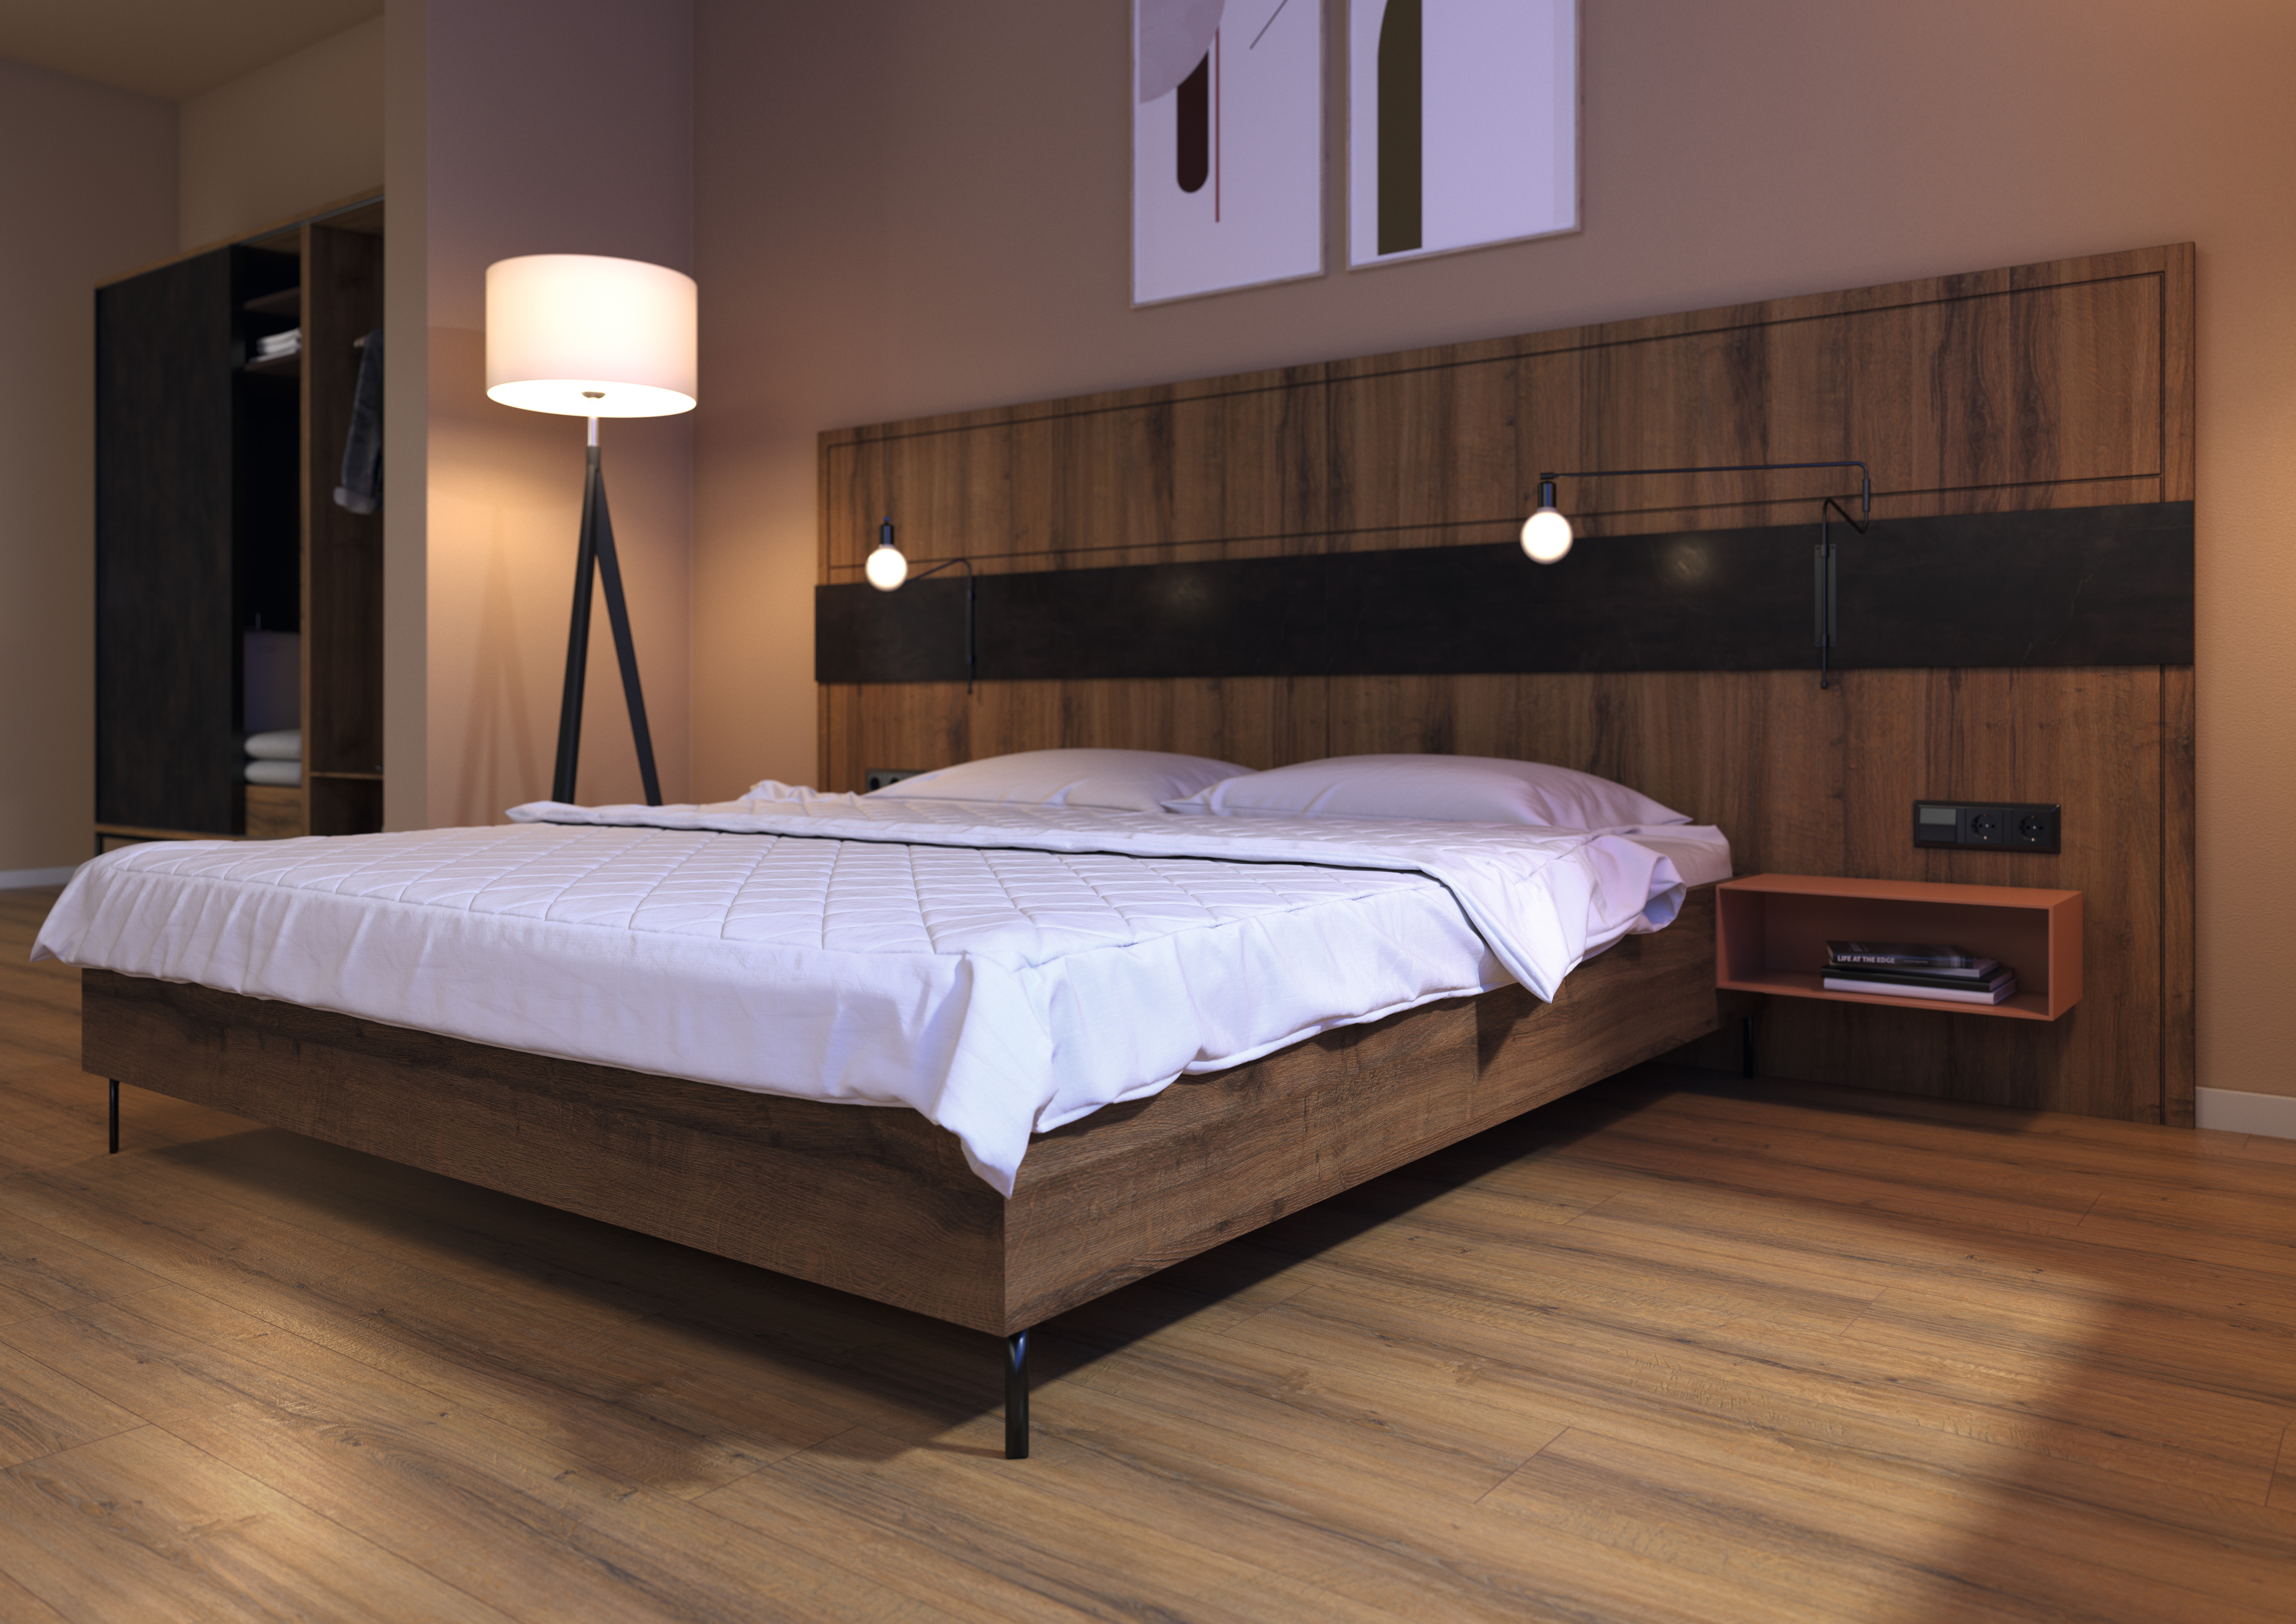 Decor Match camera da letto: Rovere Sherman marrone cognac. Parete posteriore del letto: Eurodekor MDF | Base del letto: pannello truciolare Eurodekor | Pavimento: pavimento in laminato Aqua+